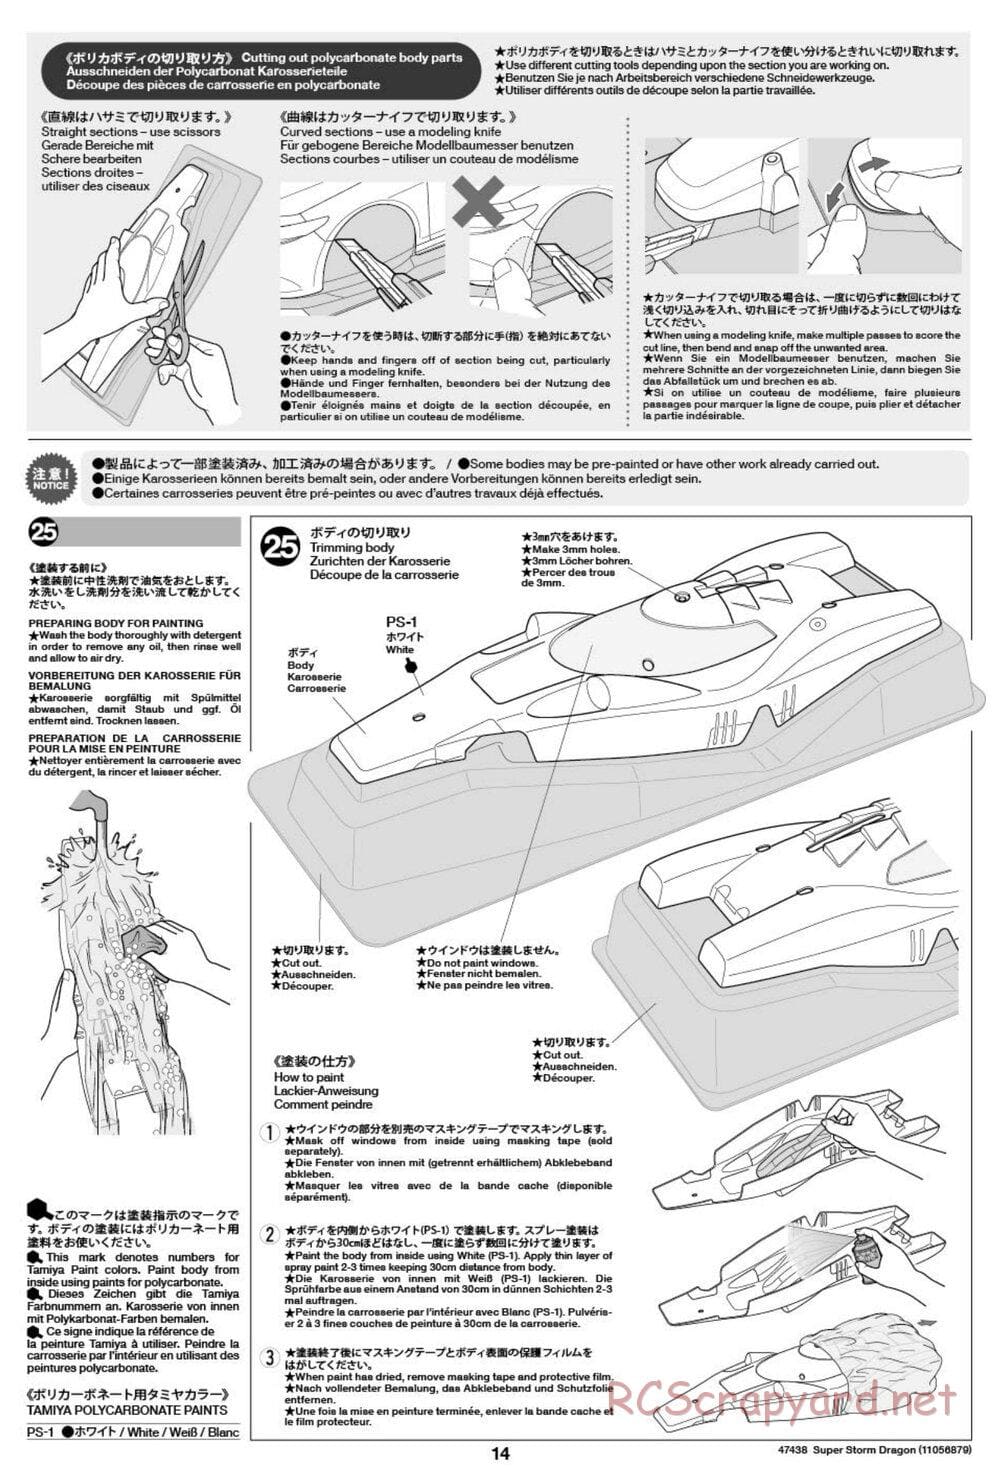 Tamiya - Super Storm Dragon Chassis - Manual - Page 14